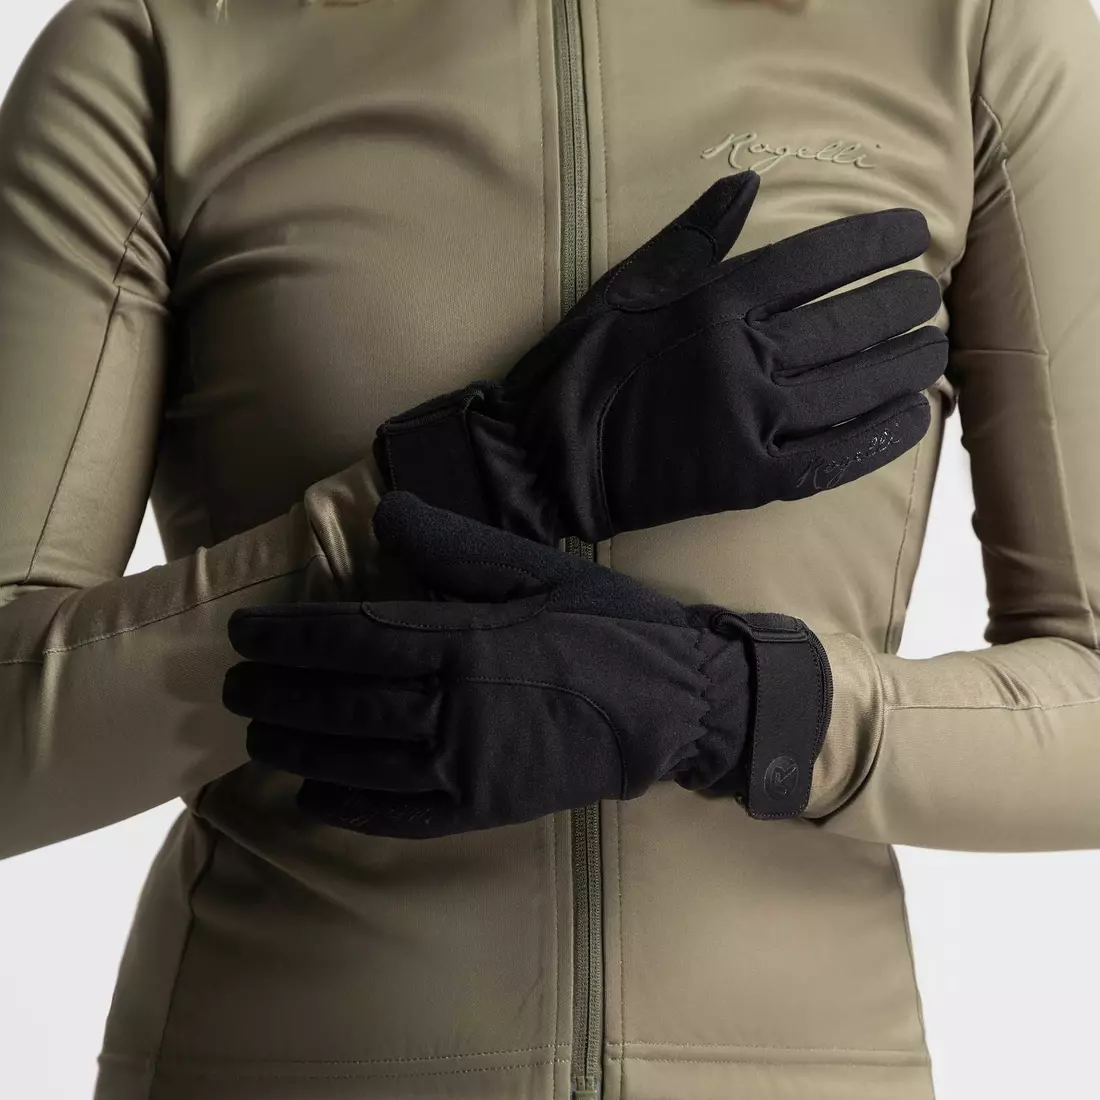 Rogelli Women's Winter Cycling Gloves CORE II, Black